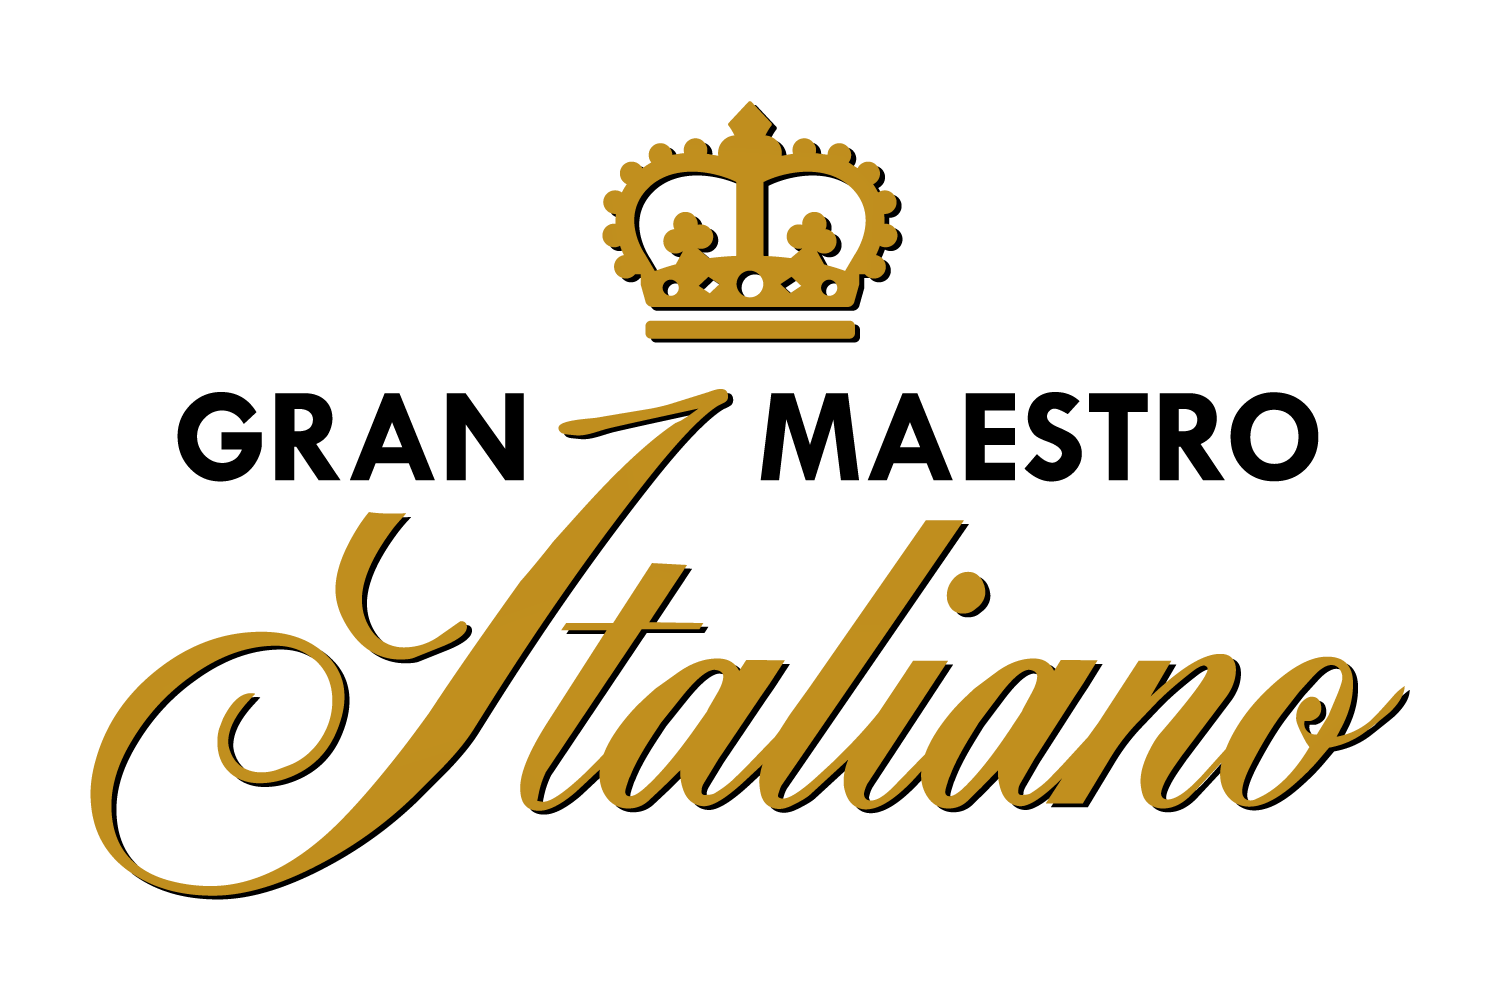 Waardebon van € 40 geldig op het Gran Maestro Italiano assortiment voor Koffievoordeel.nl!